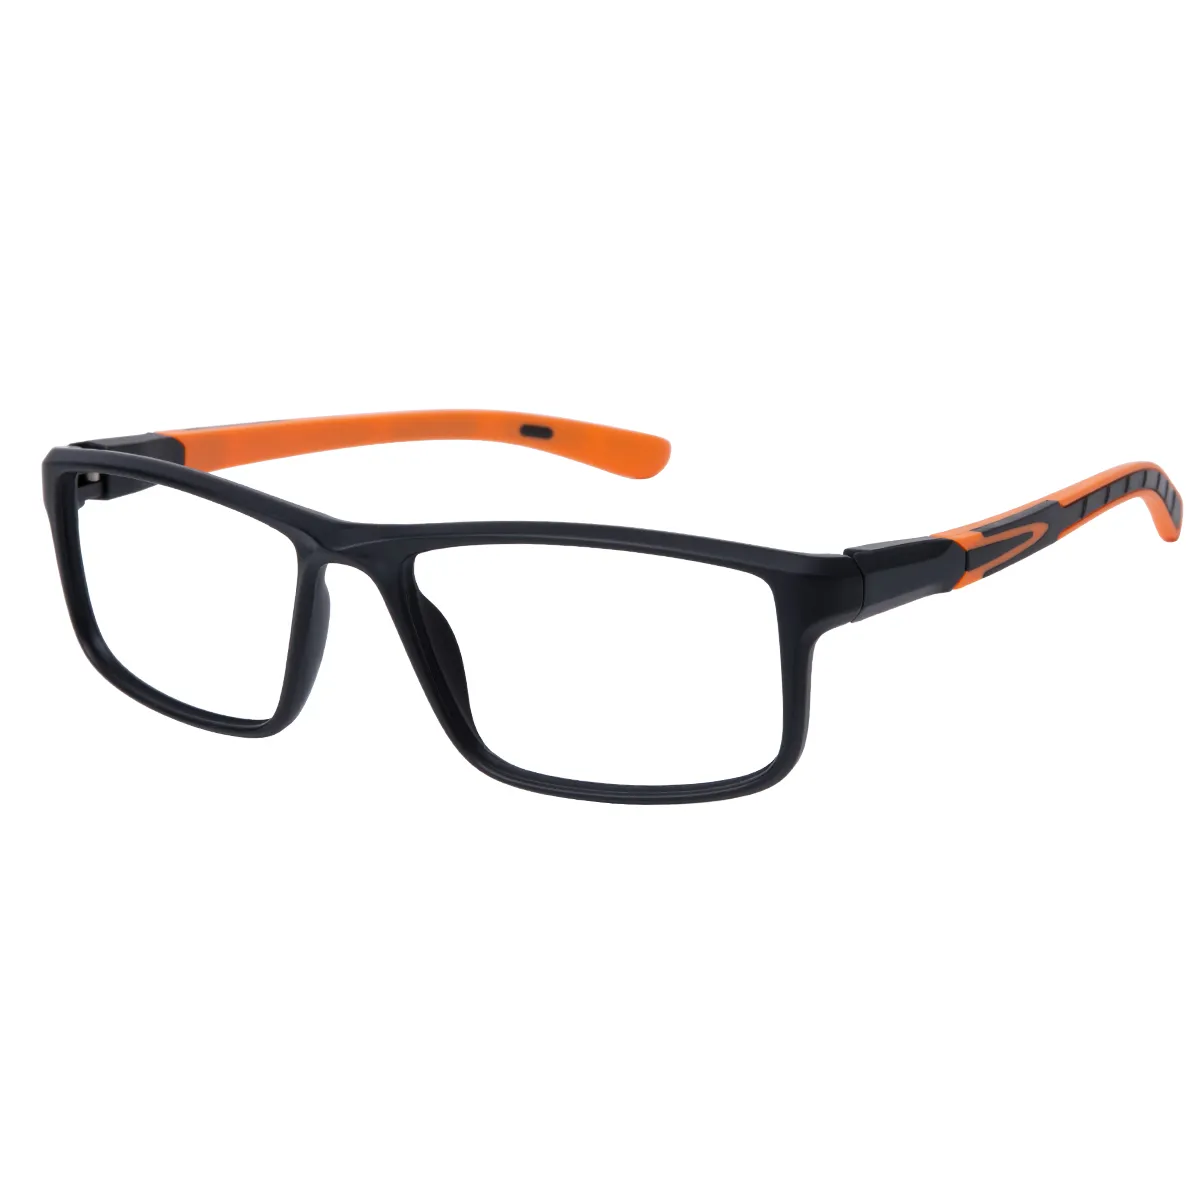 Ronan - Rectangle Black-Orange Glasses for Men